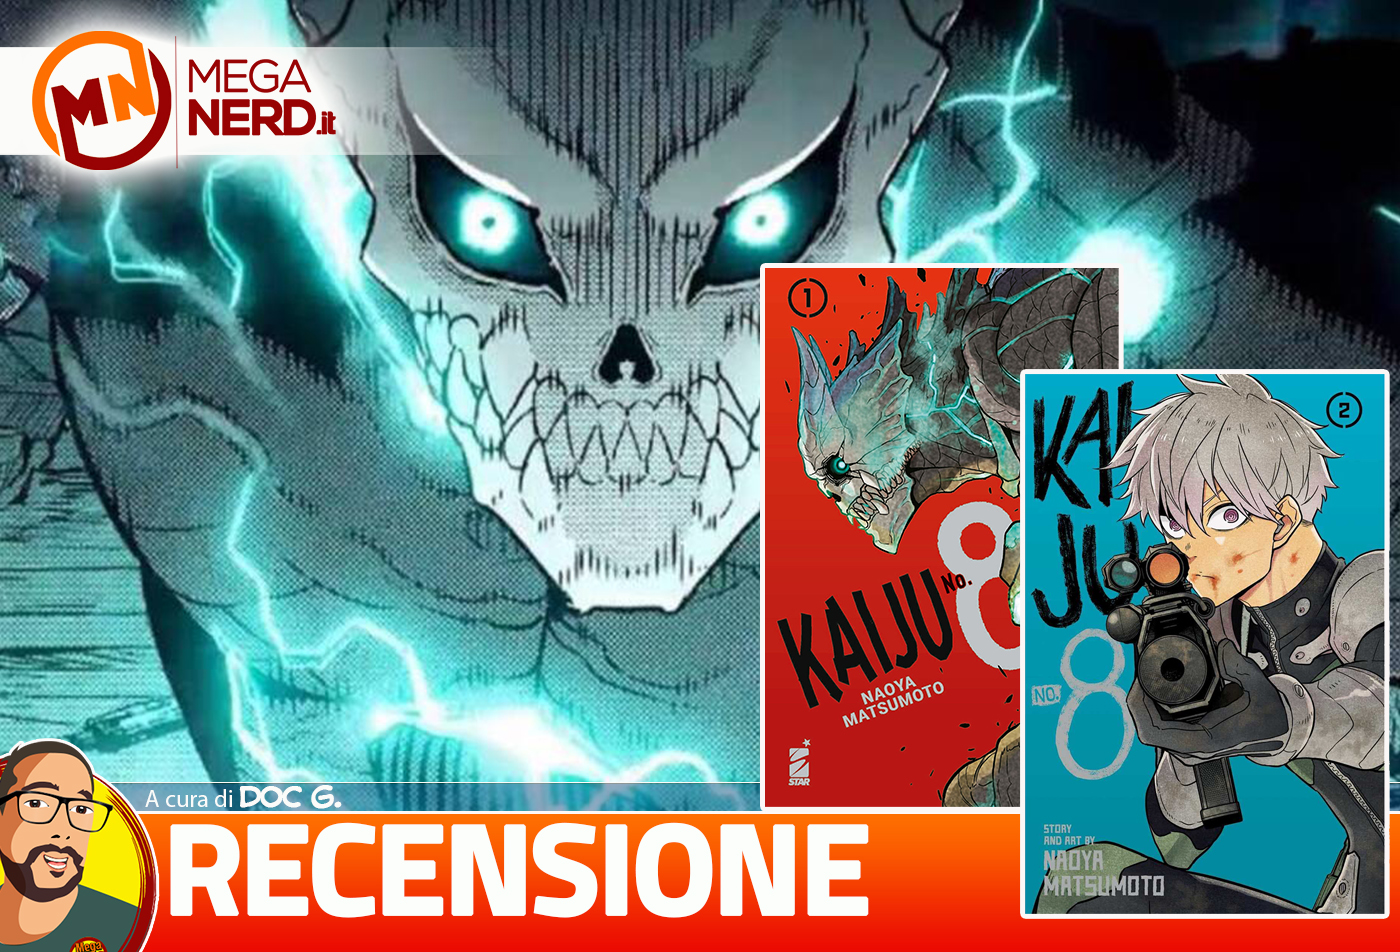 Kaiju No. 8 vol. 1 e 2 - Recensione del nuovo fenomeno manga